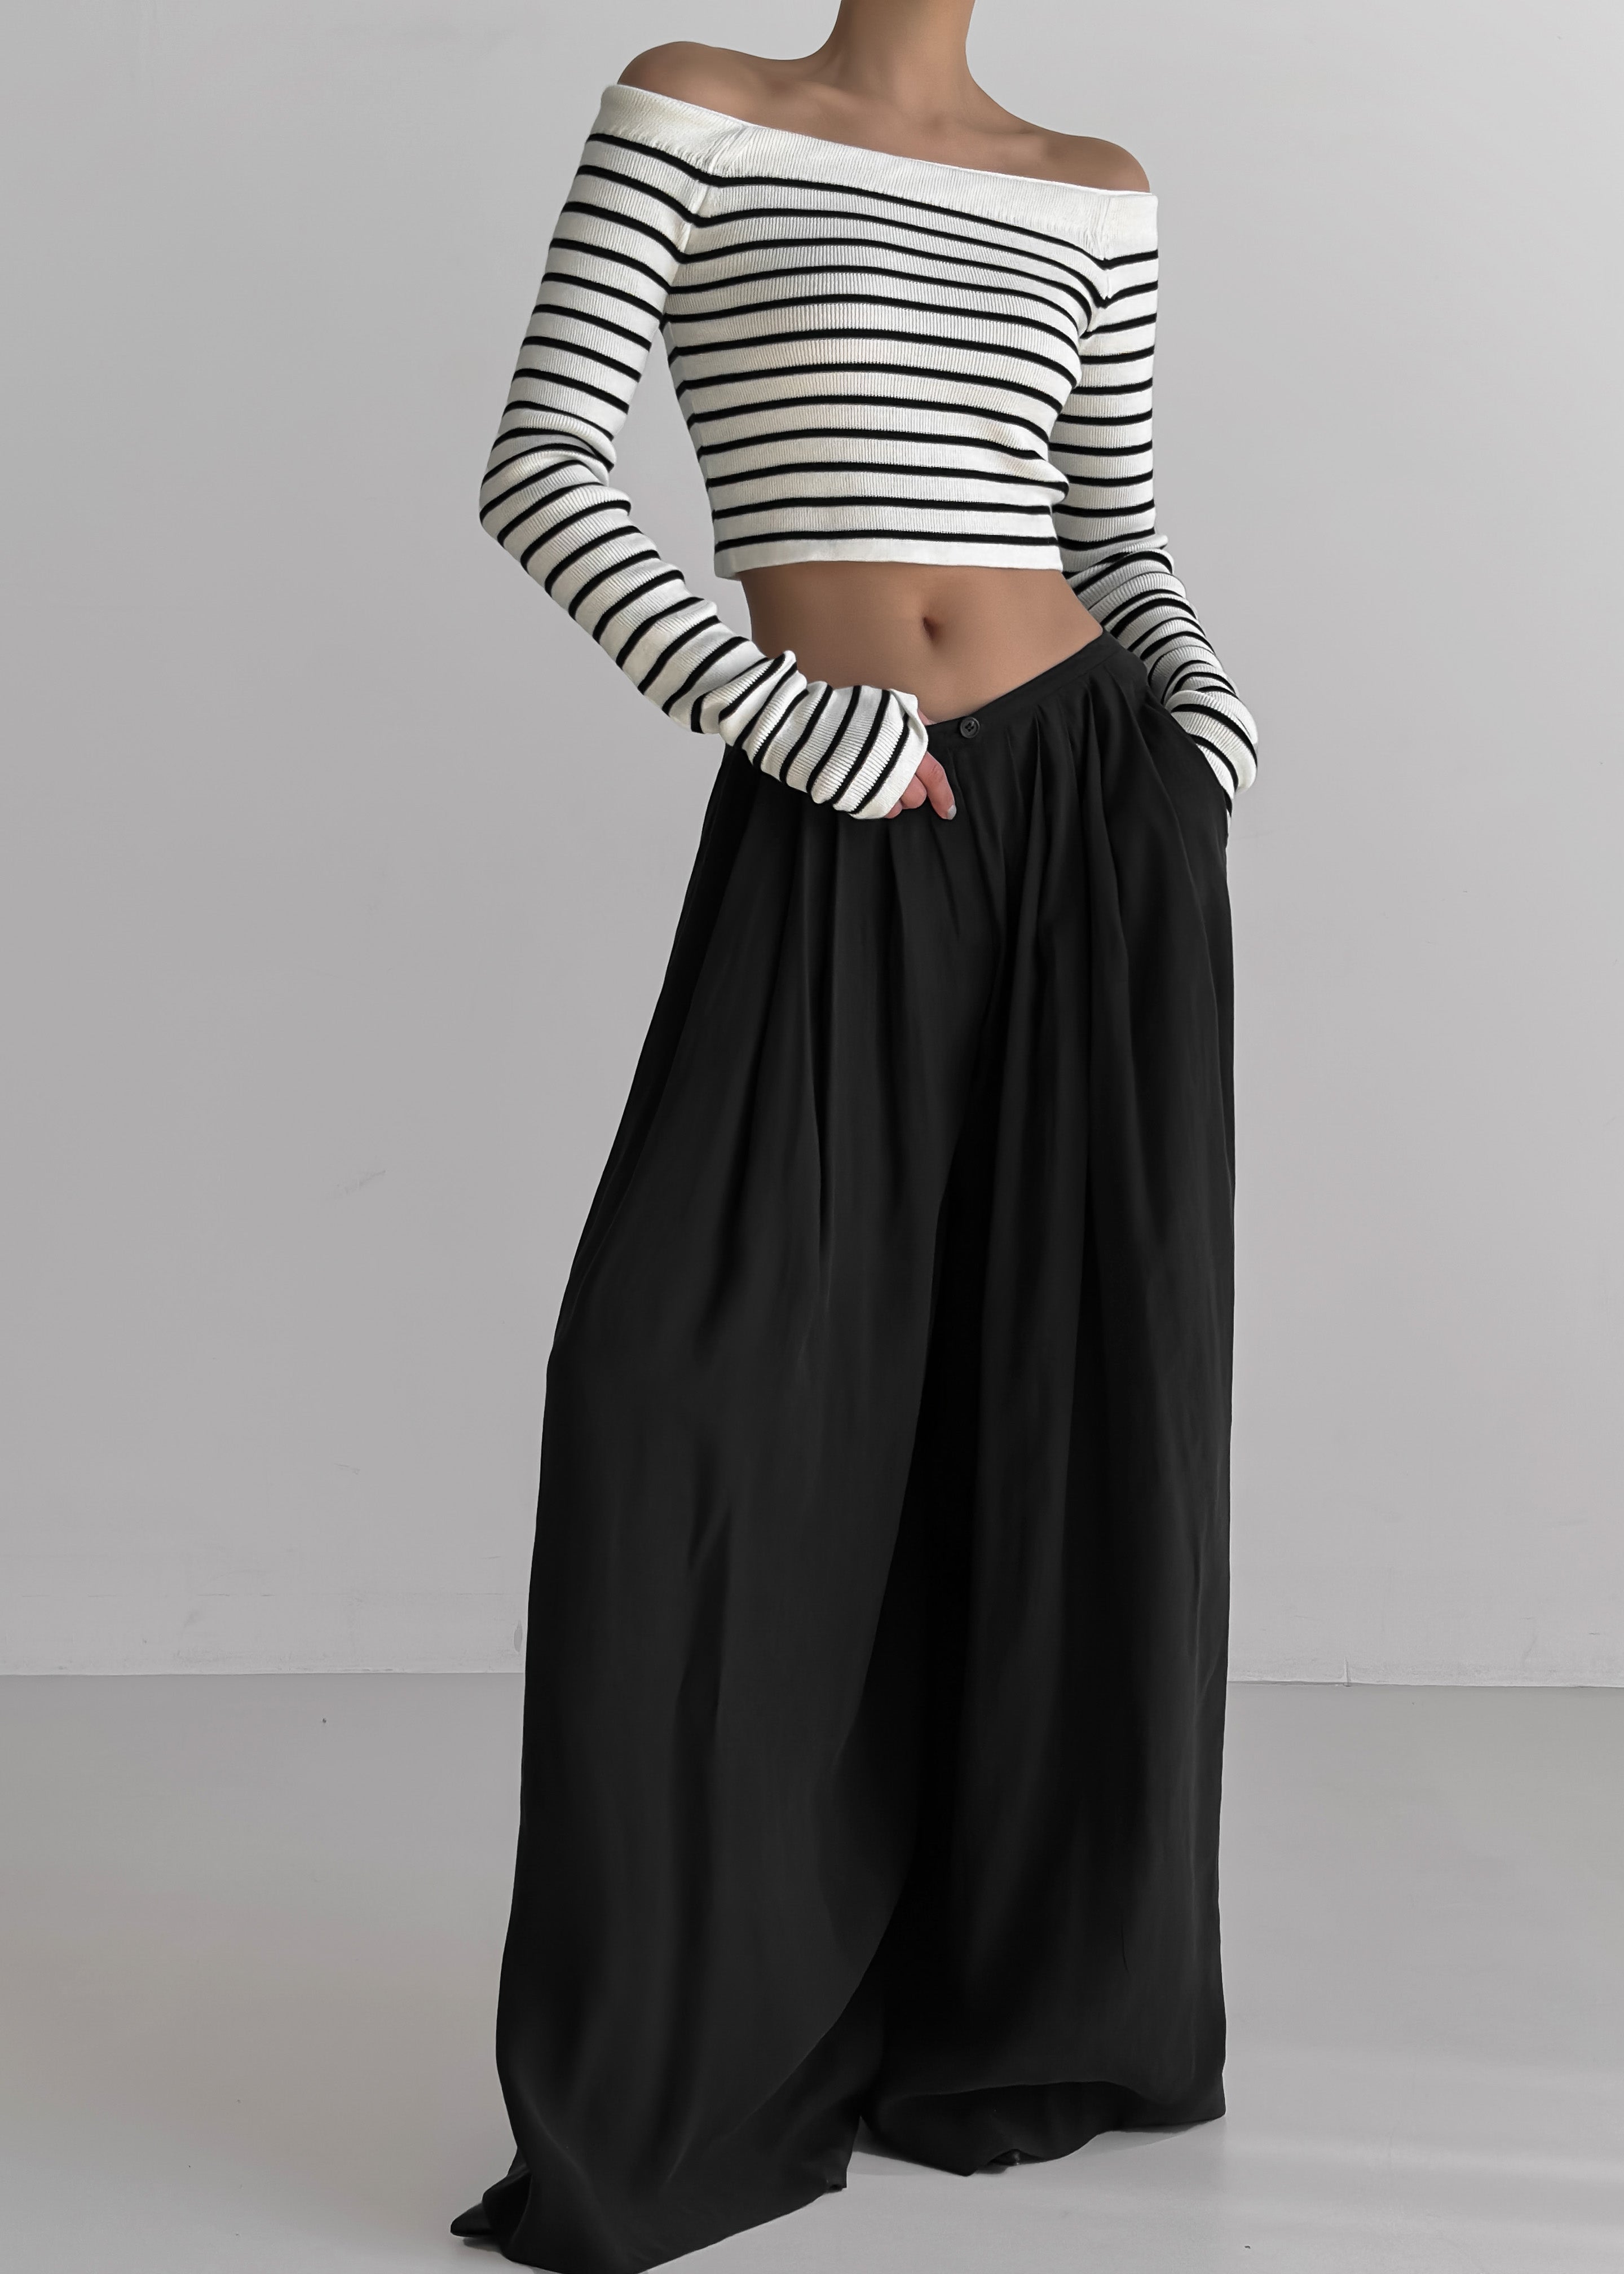 Coco White Off Shoulder Sweater - Black Stripe - 6